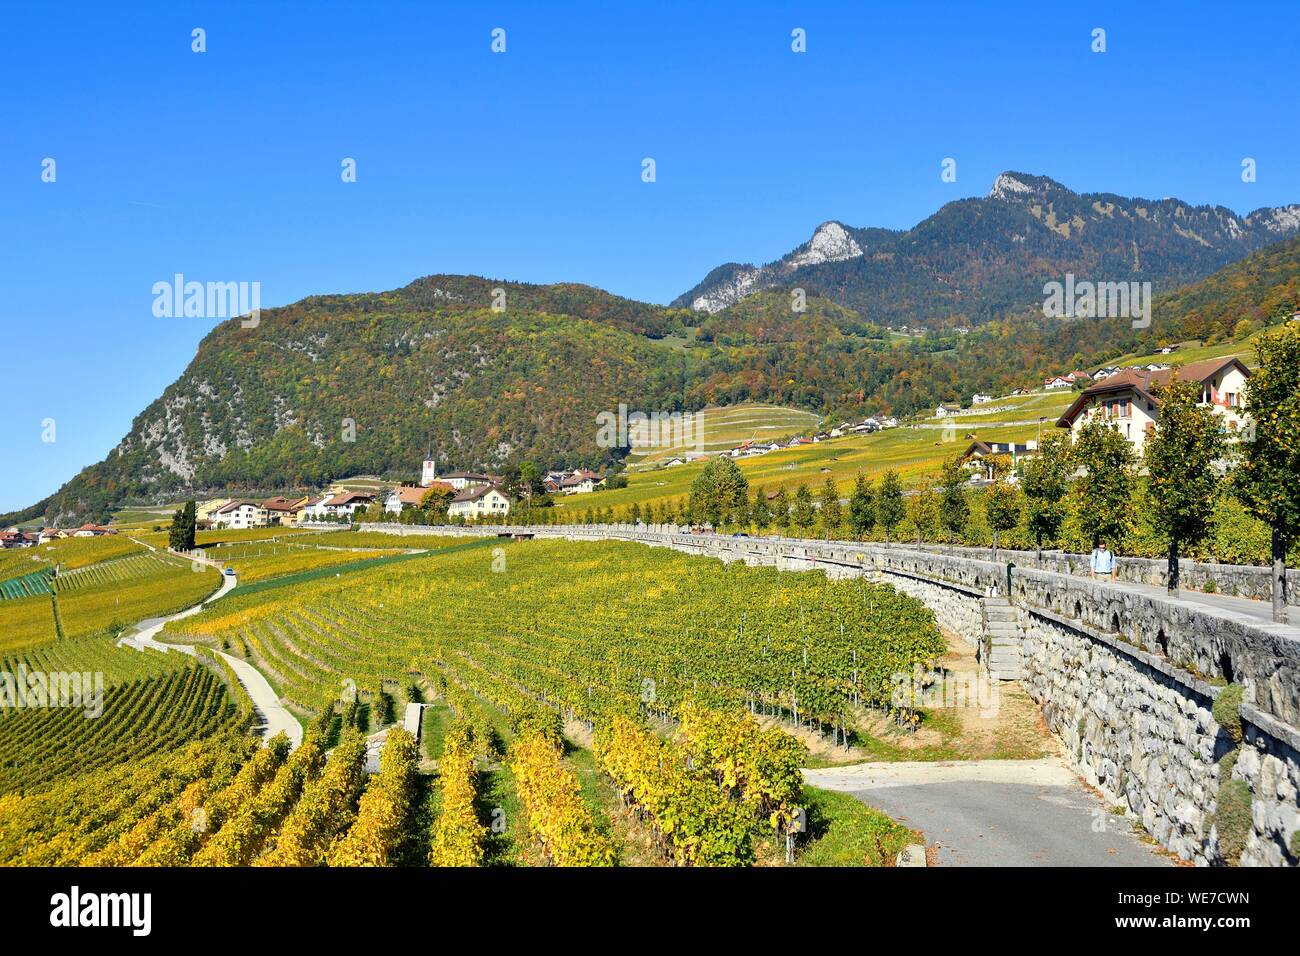 La Svizzera, nel Cantone di Vaud, Aigle, cittadina circondata da vigneti Foto Stock